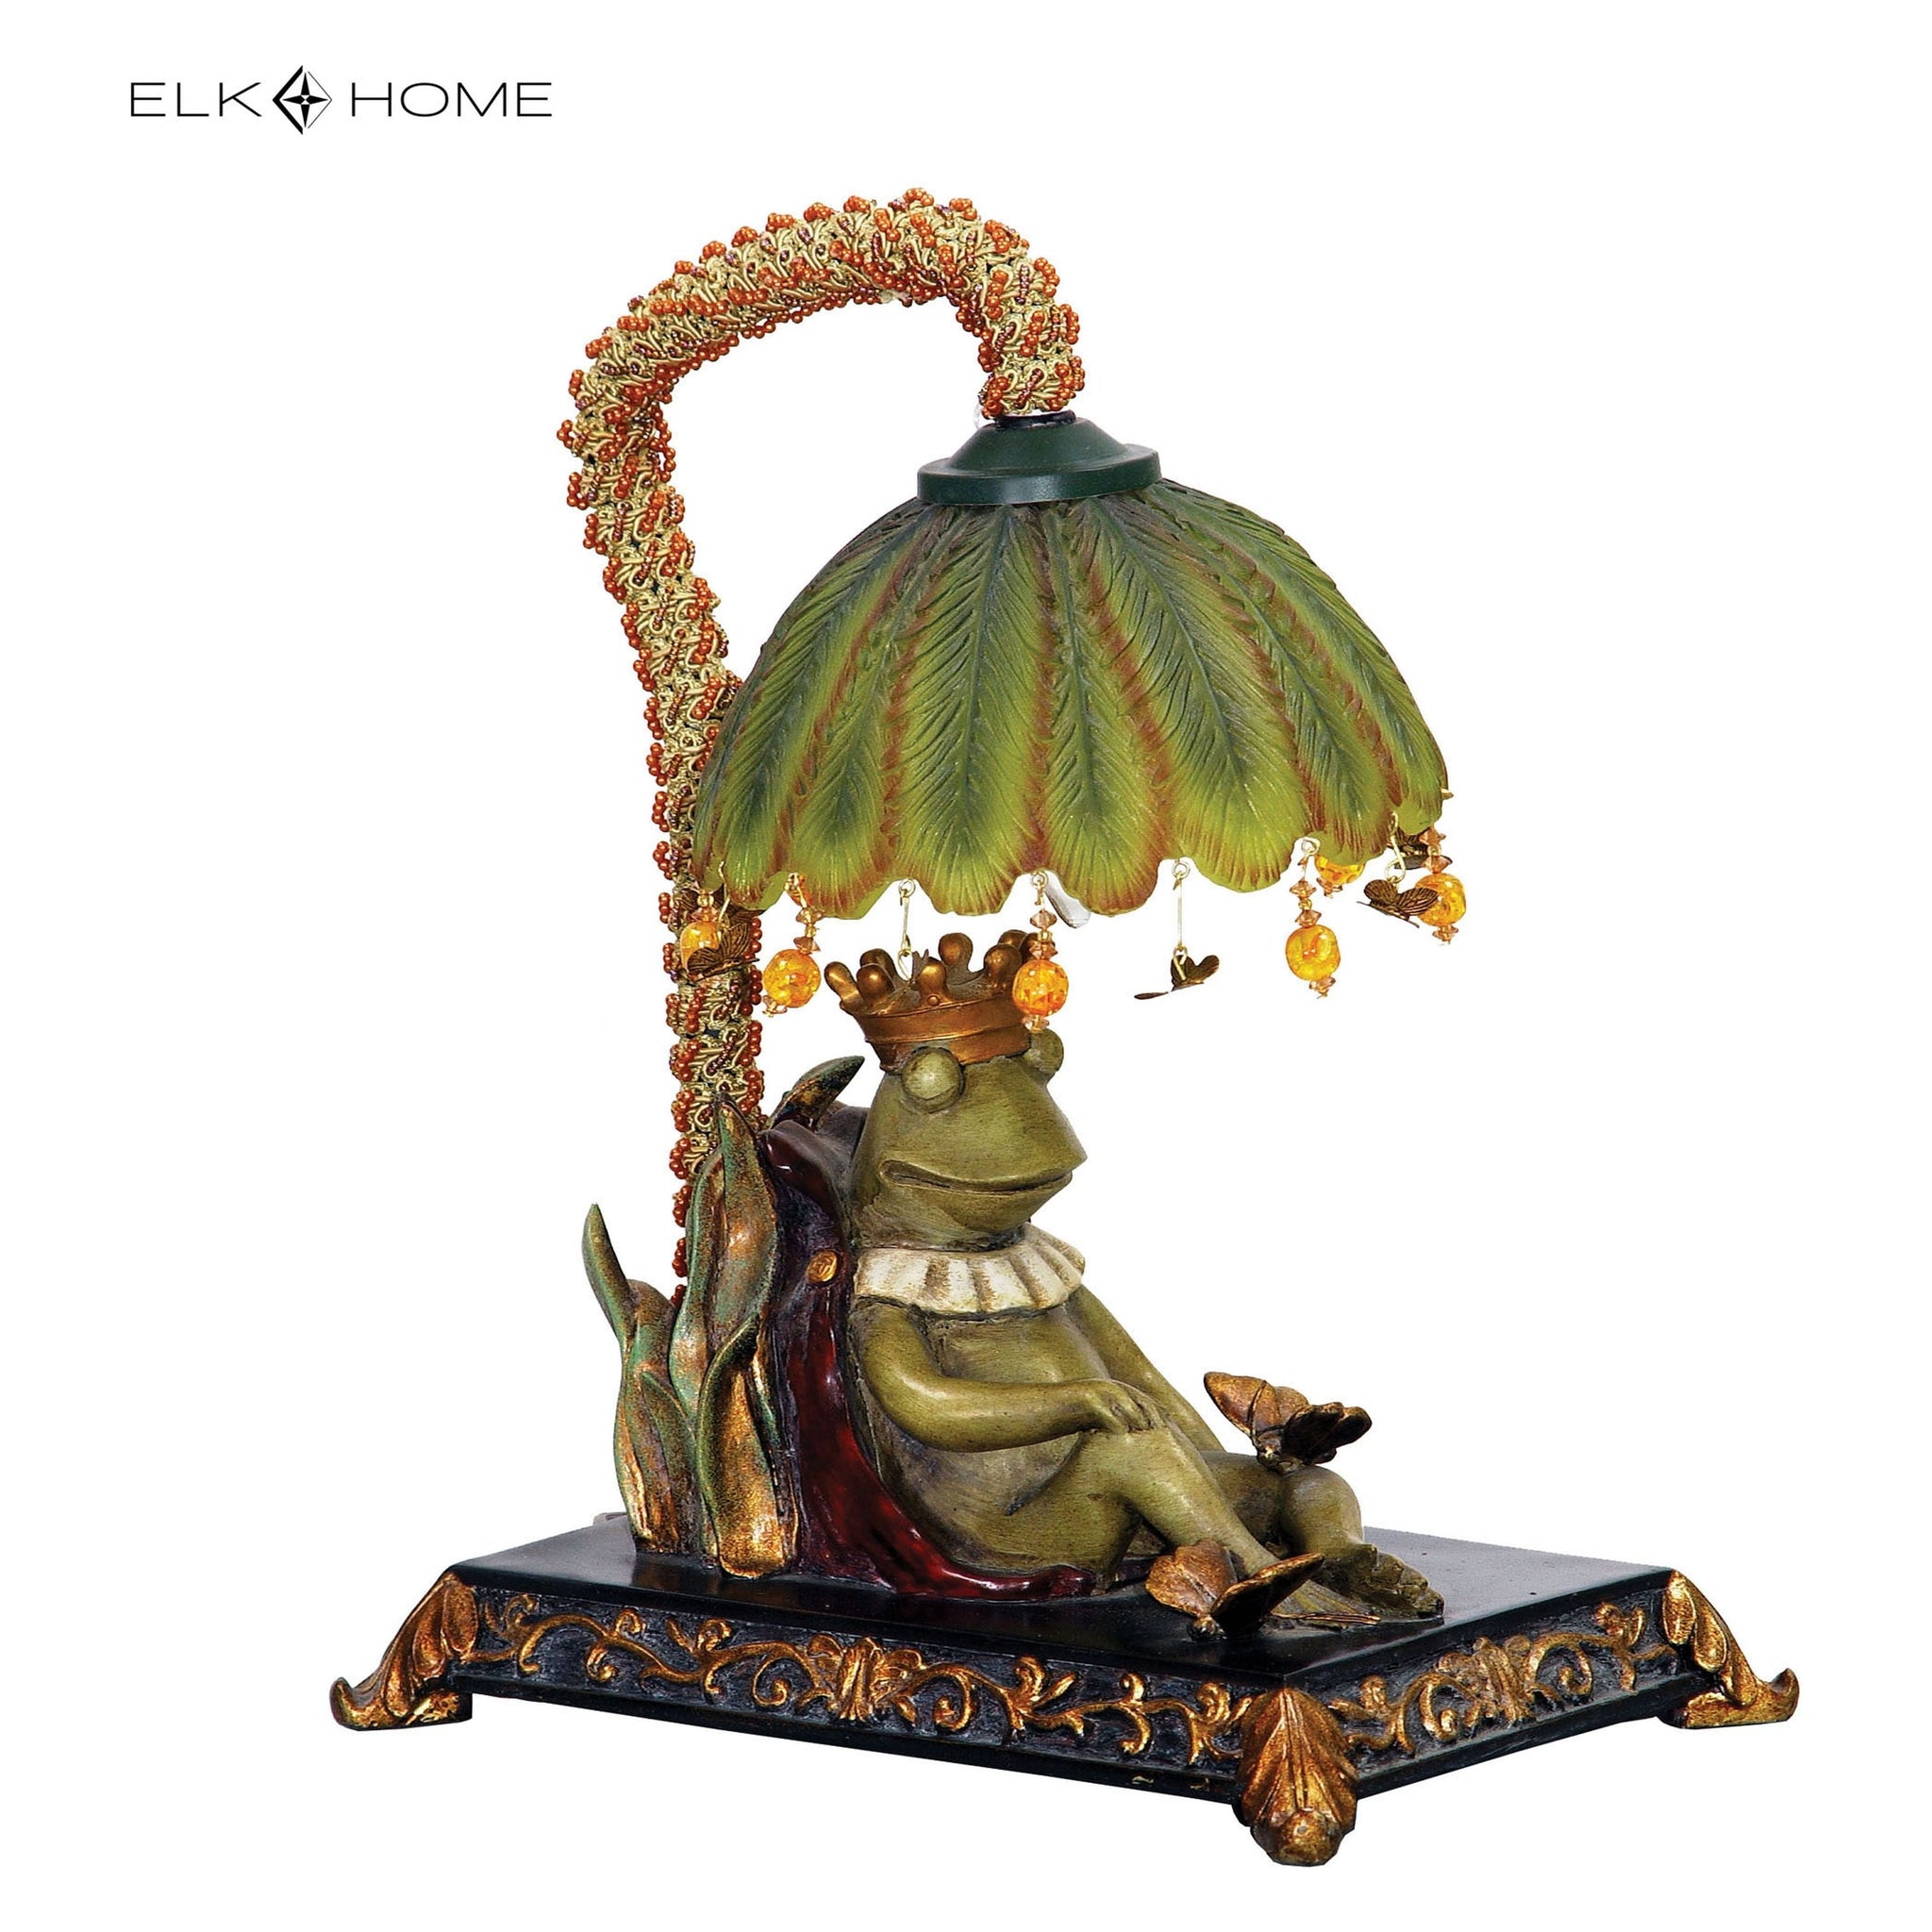 Sleeping King Frog 12.3" High 1-Light Table Lamp